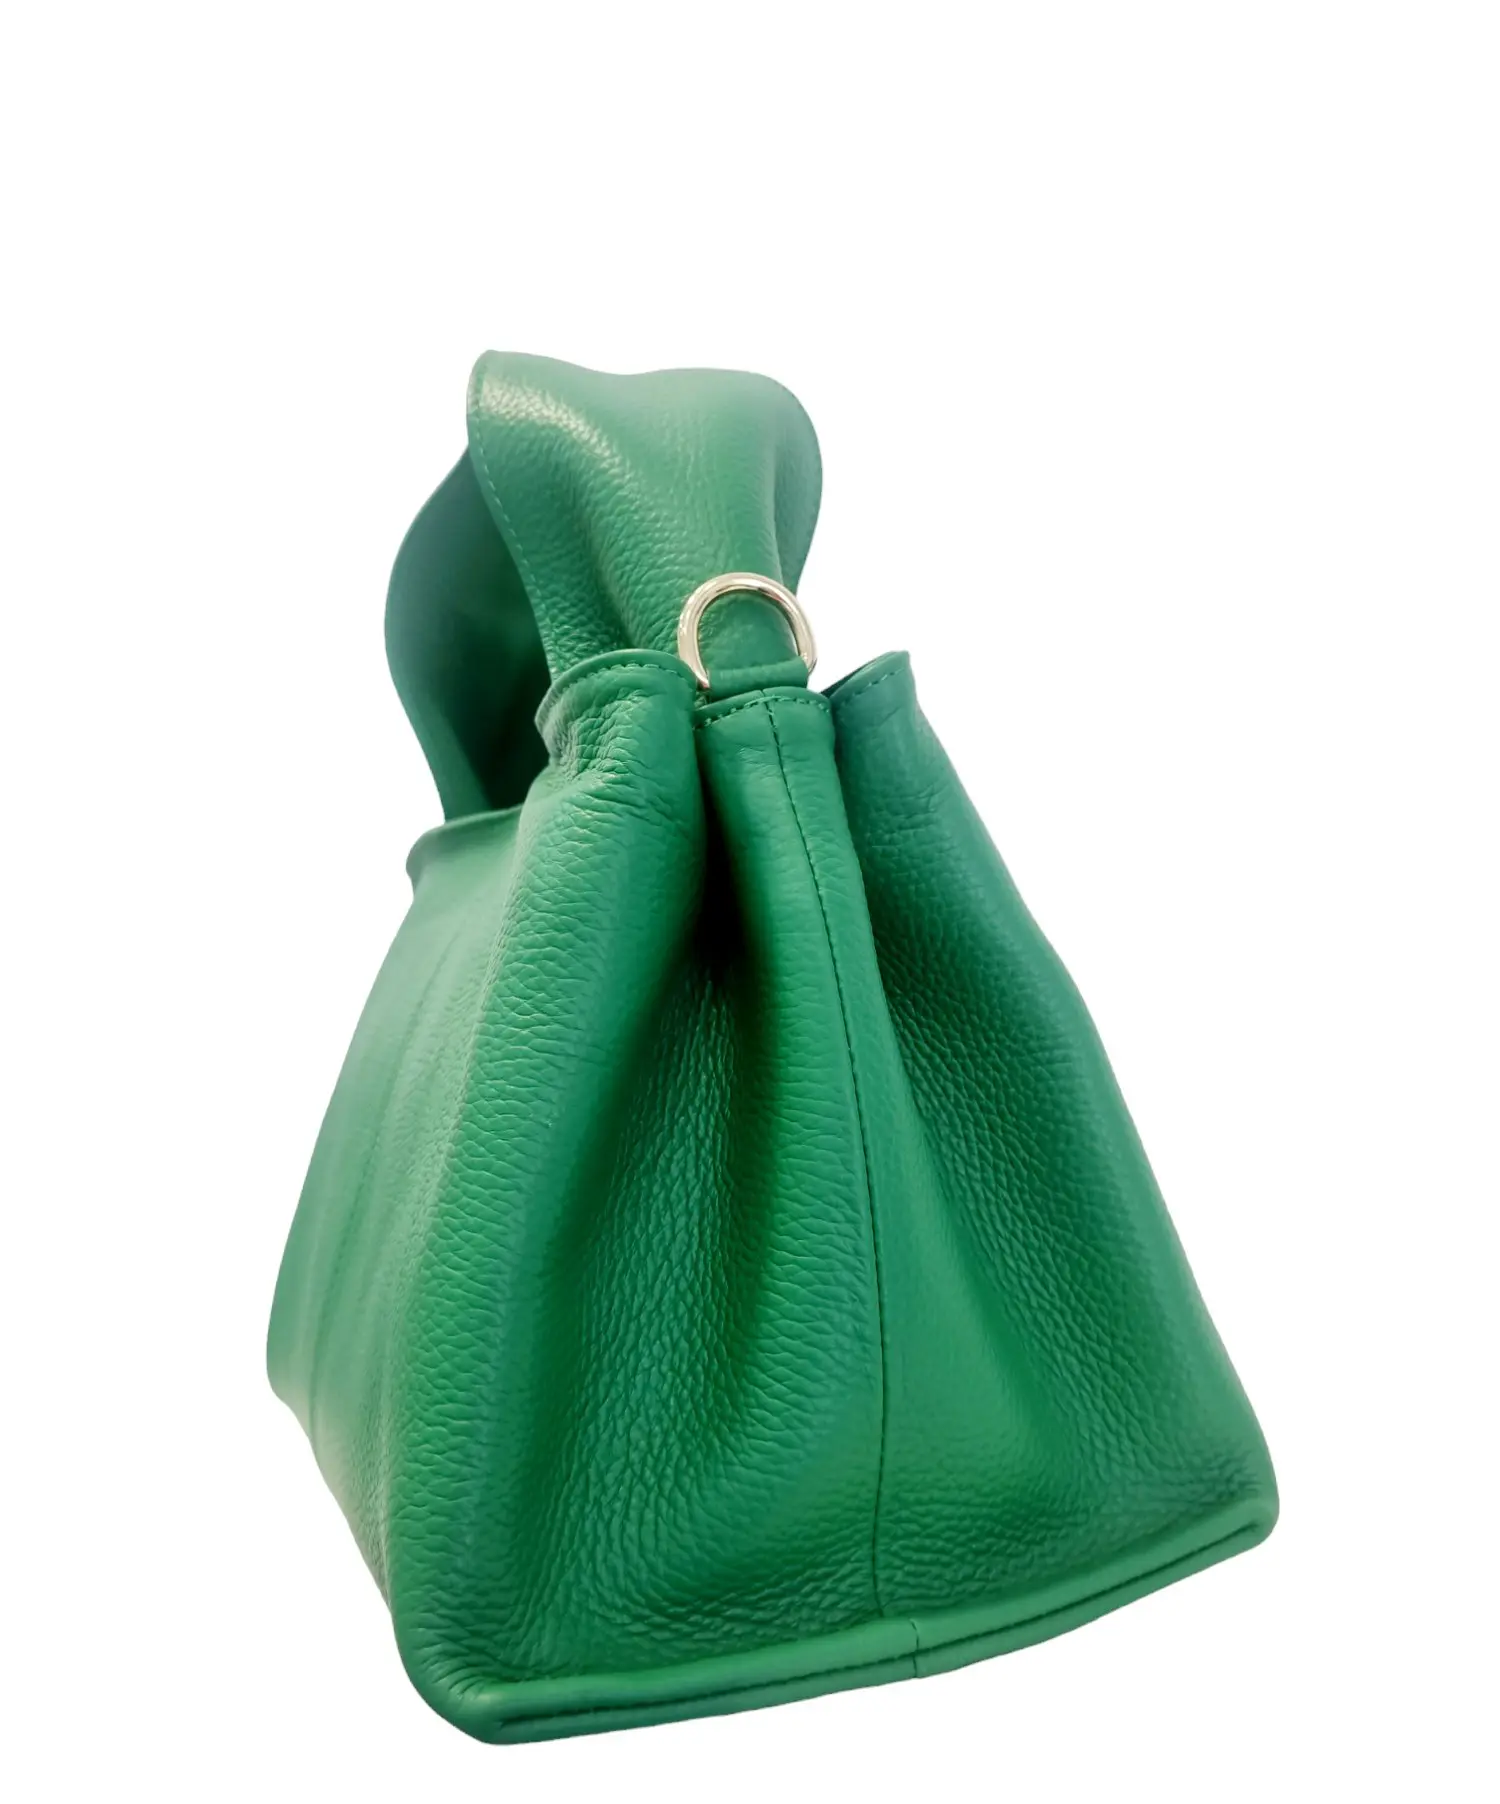 Bolso de piel auténtica de color verde, fabricado en Italia, equipado con bandolera e interior forrado con bolsillos laterales dobles. Cierre con cremallera. Medidas L 27 B16 H20